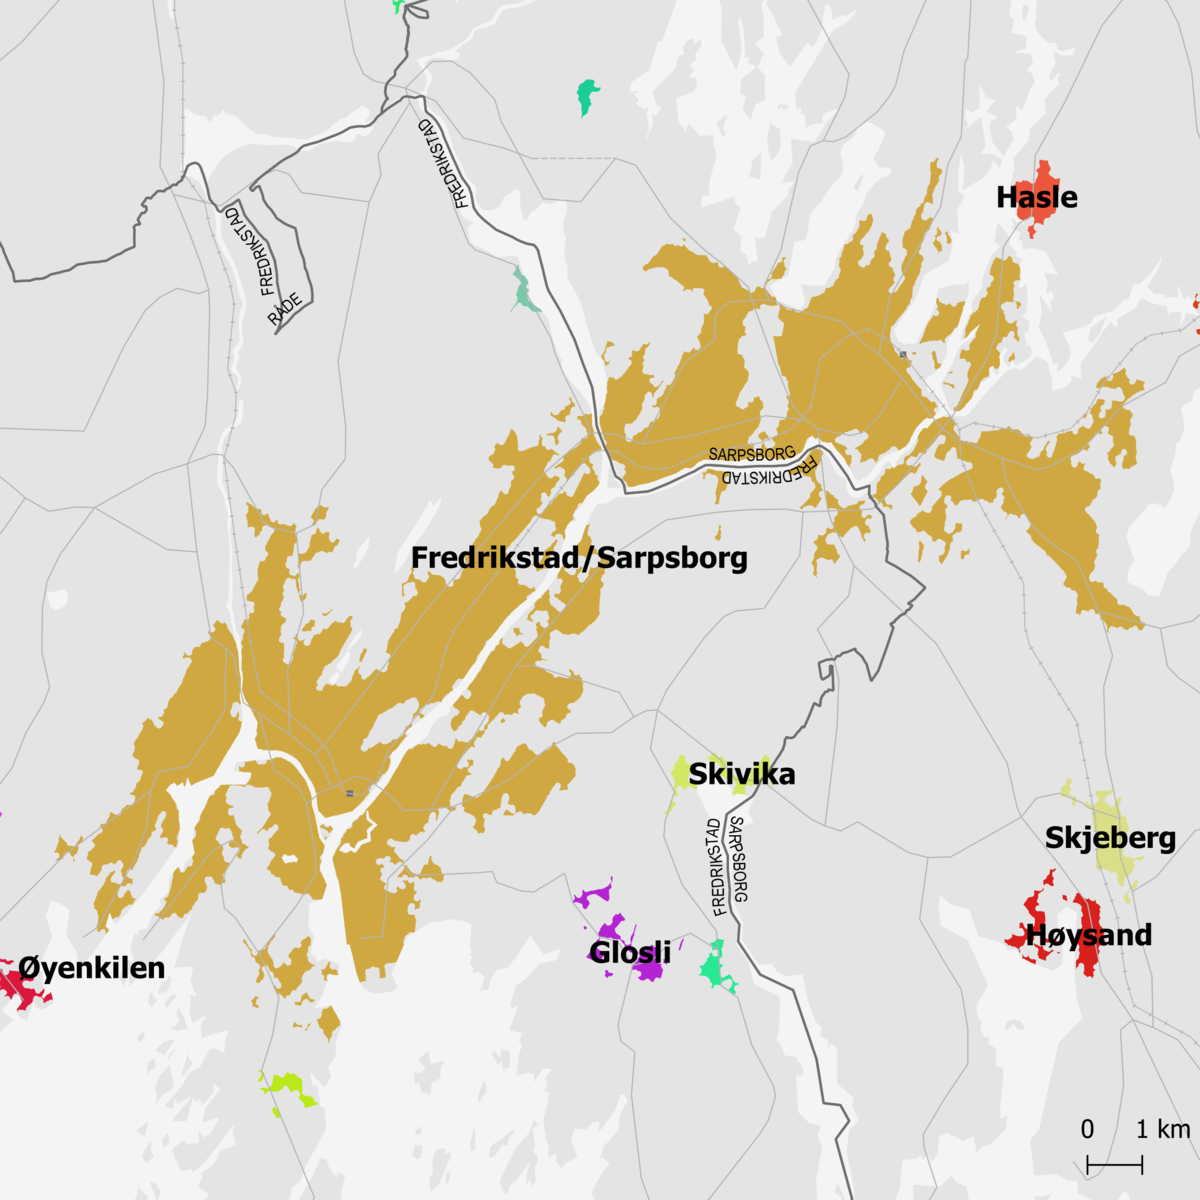 Tettstedet Fredrikstad/Sarpsborg markert med  okerfarge